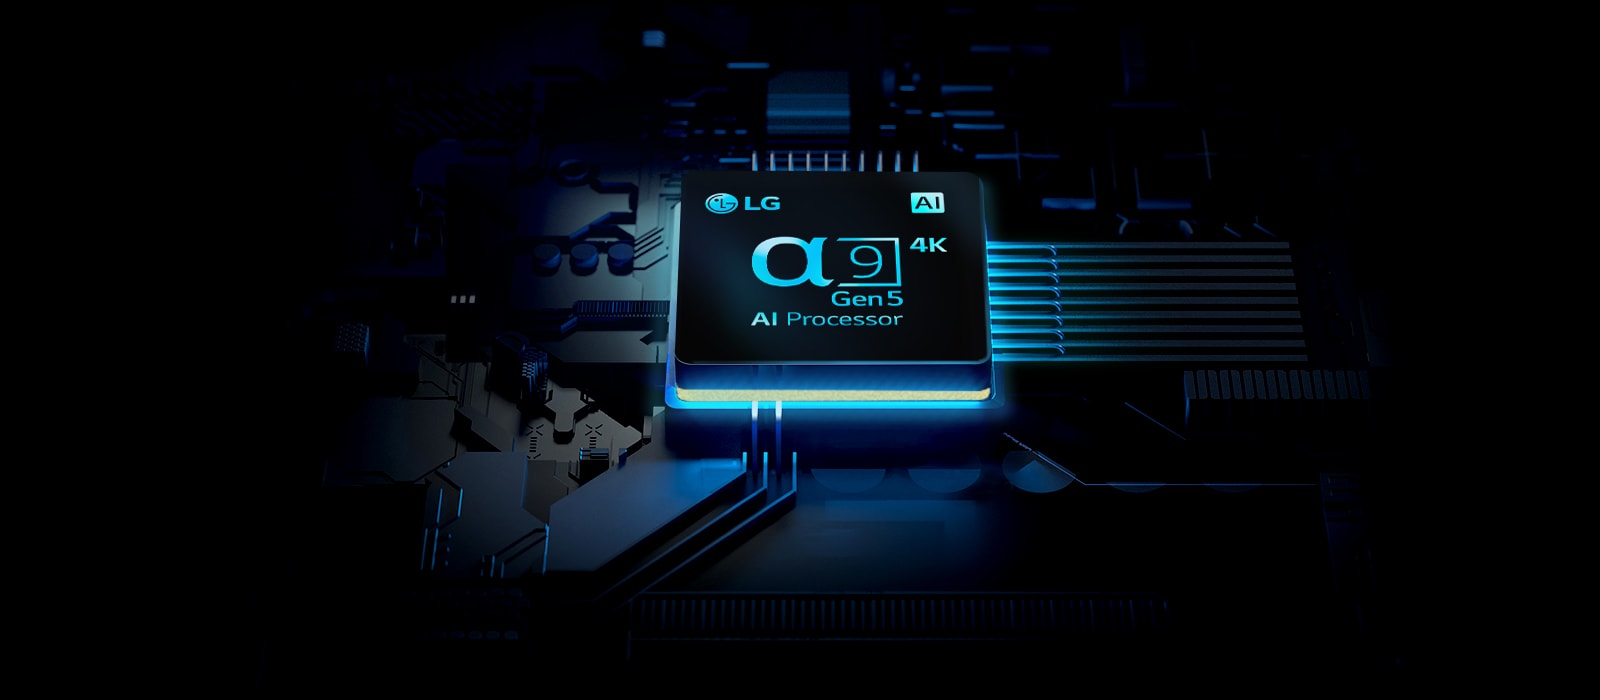 Cip 4K LG ⍺9 Gen5 AI Processor vazut cu bare de lumina care emit din acesta.